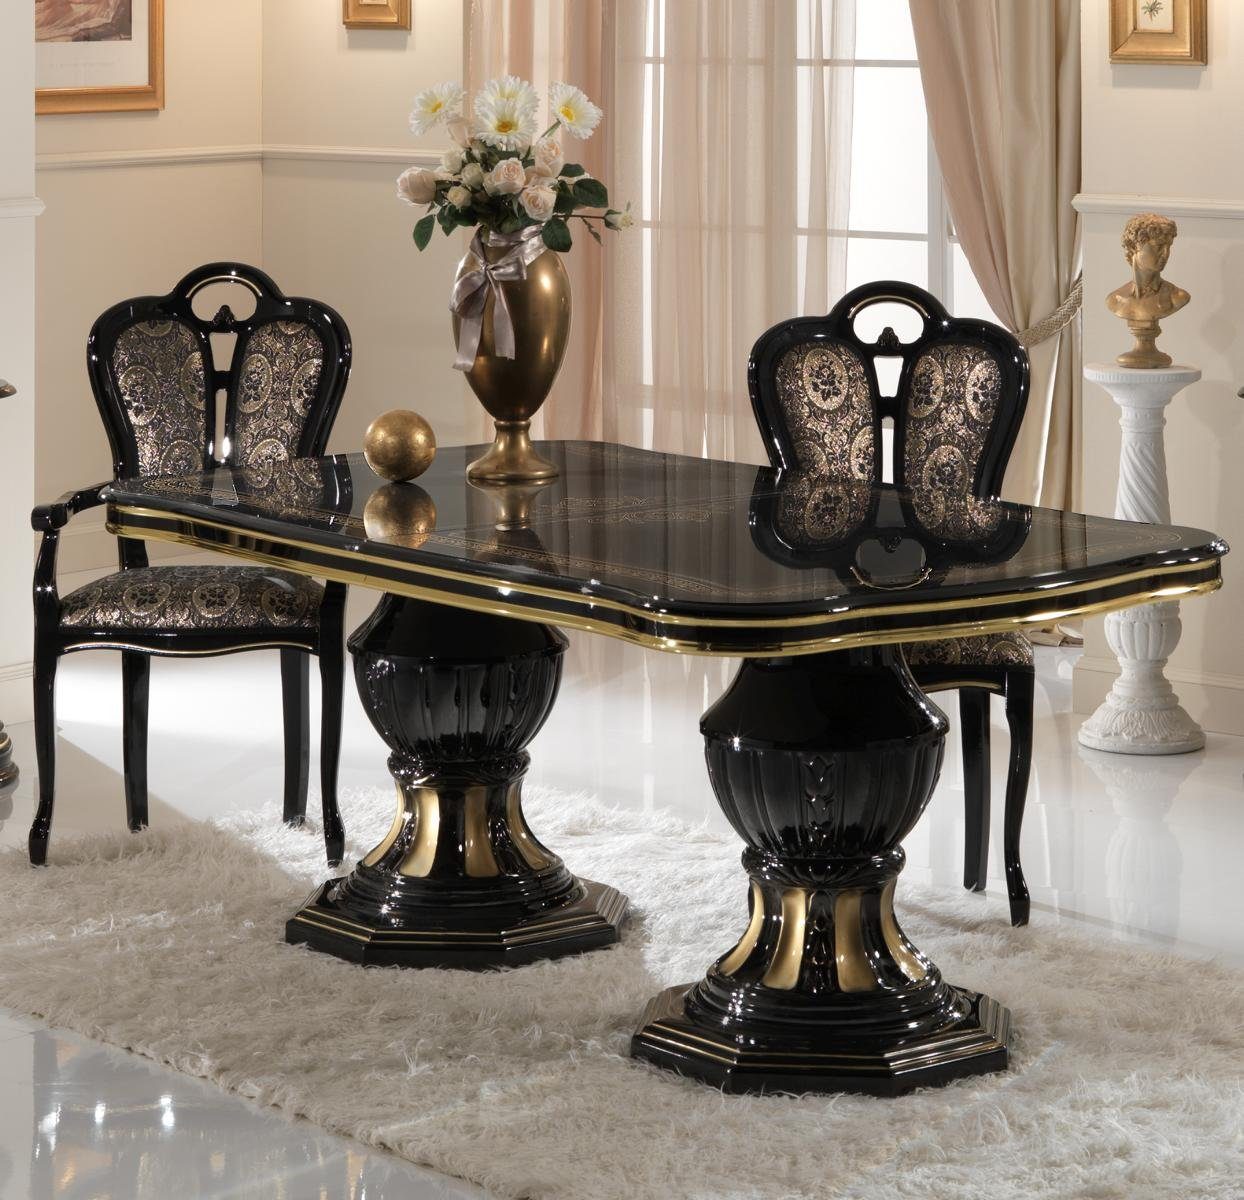 JVmoebel Esstisch Klassische Möbel Italienische Tisch Designer Möbel Sessel Ess Zimmer